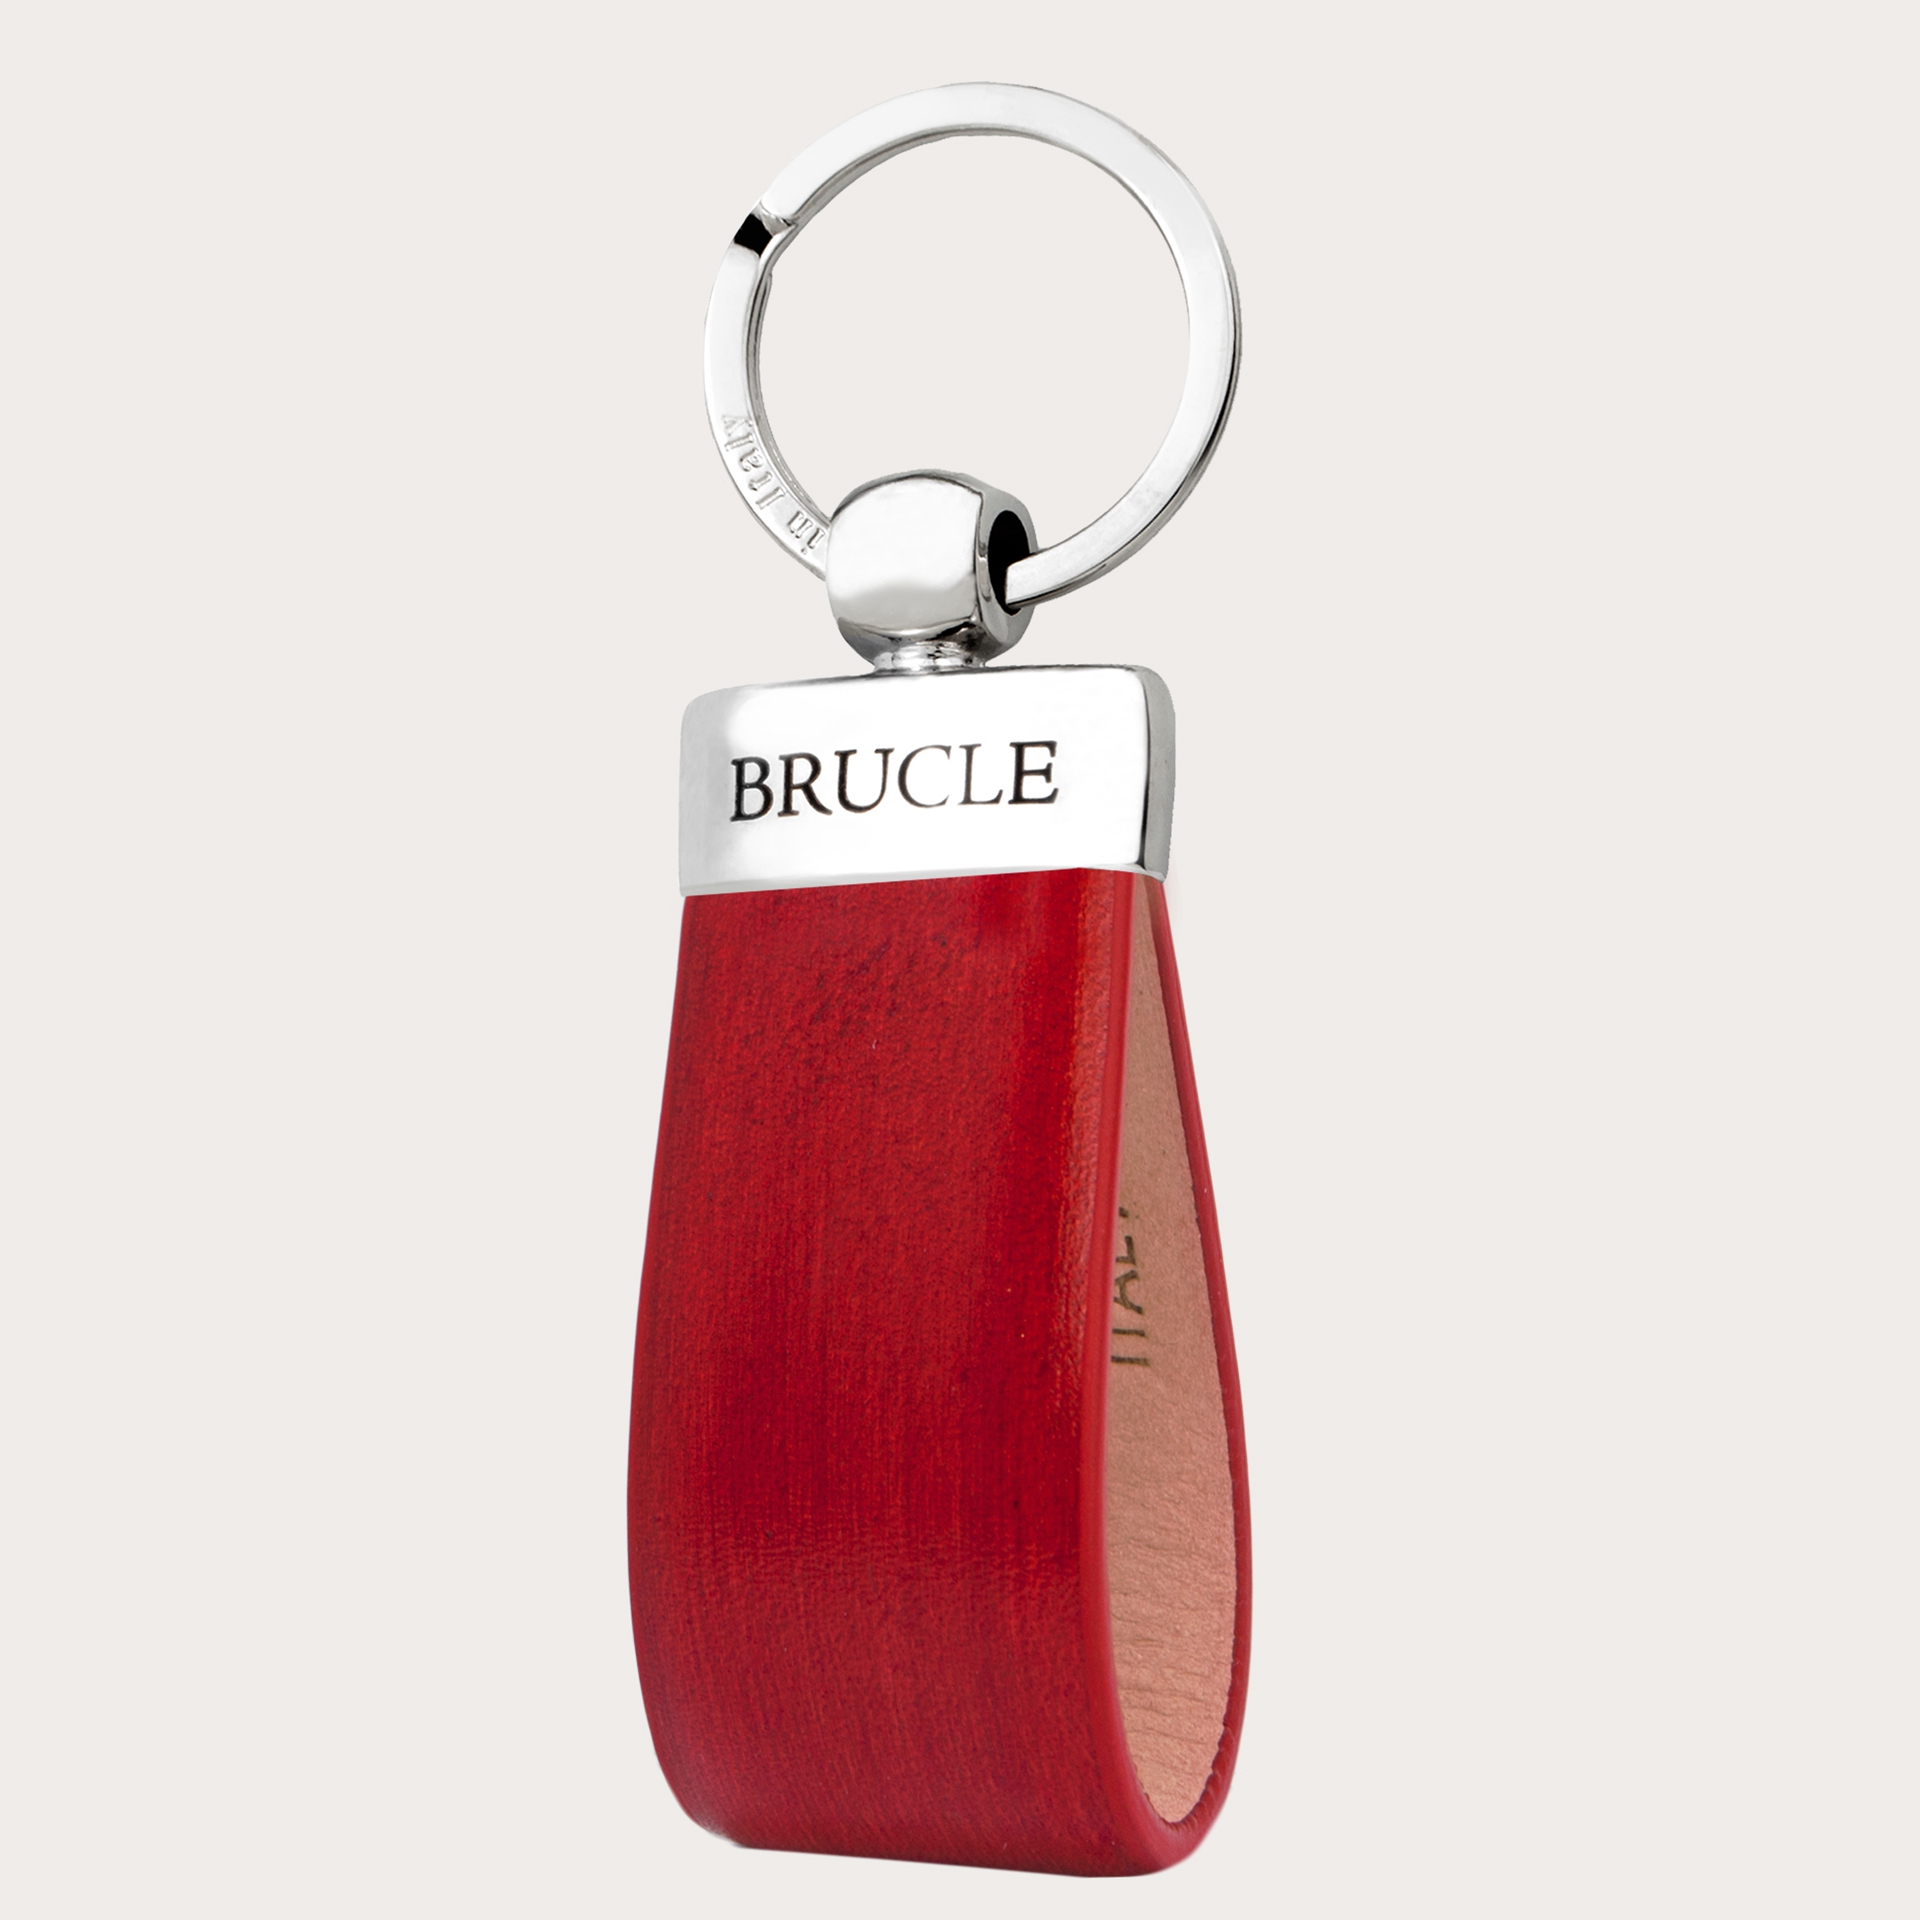 Schlüsselanhänger leder von hand gepuffert Schlüsselanhänger aus handkoloriertem Leder, rubinrot